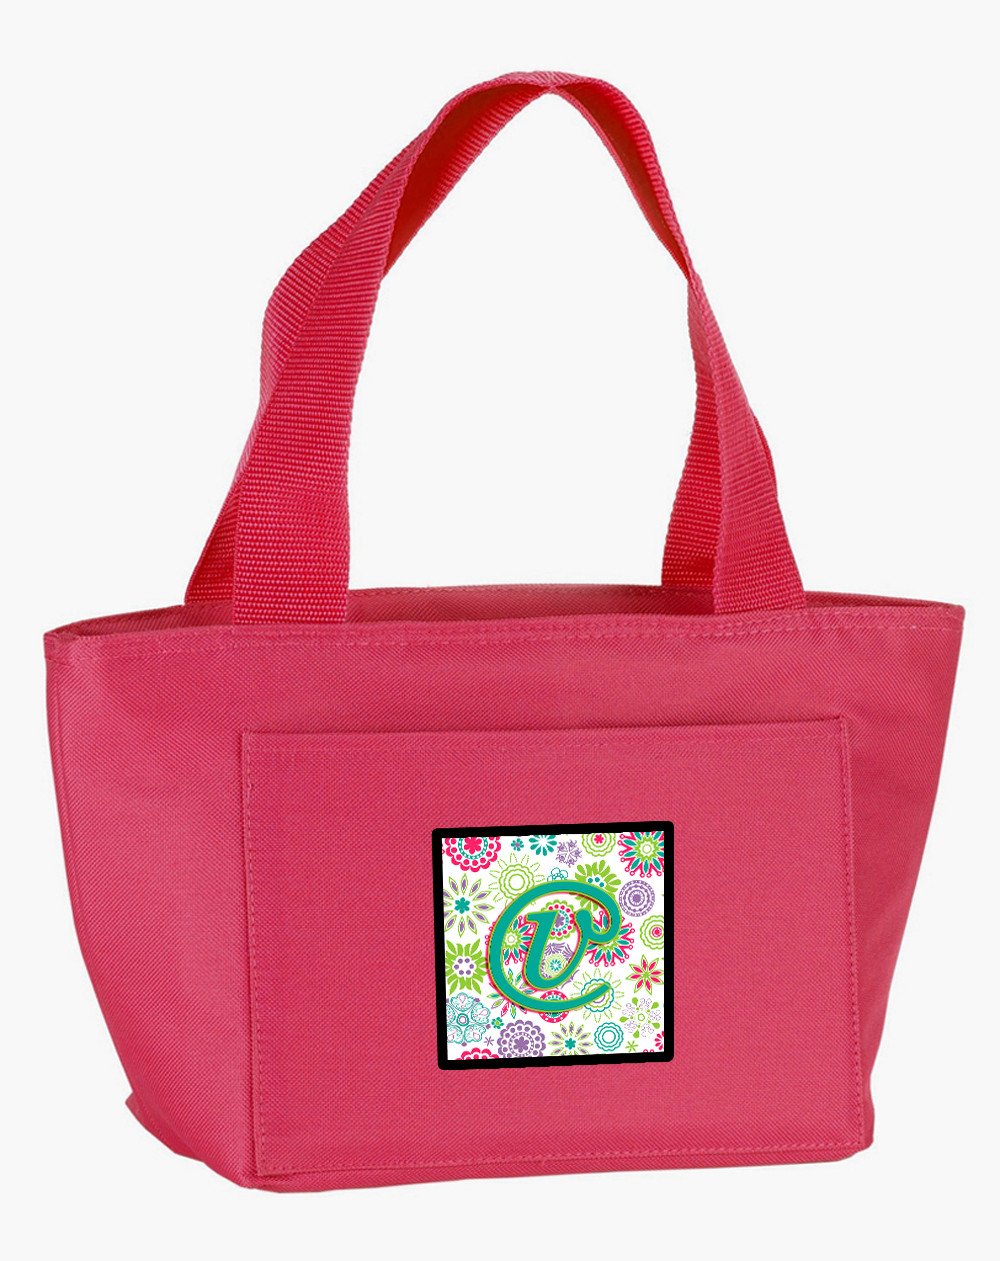 Letter V Flowers Pink Teal Green Initial Lunch Bag CJ2011-VPK-8808 by Caroline's Treasures